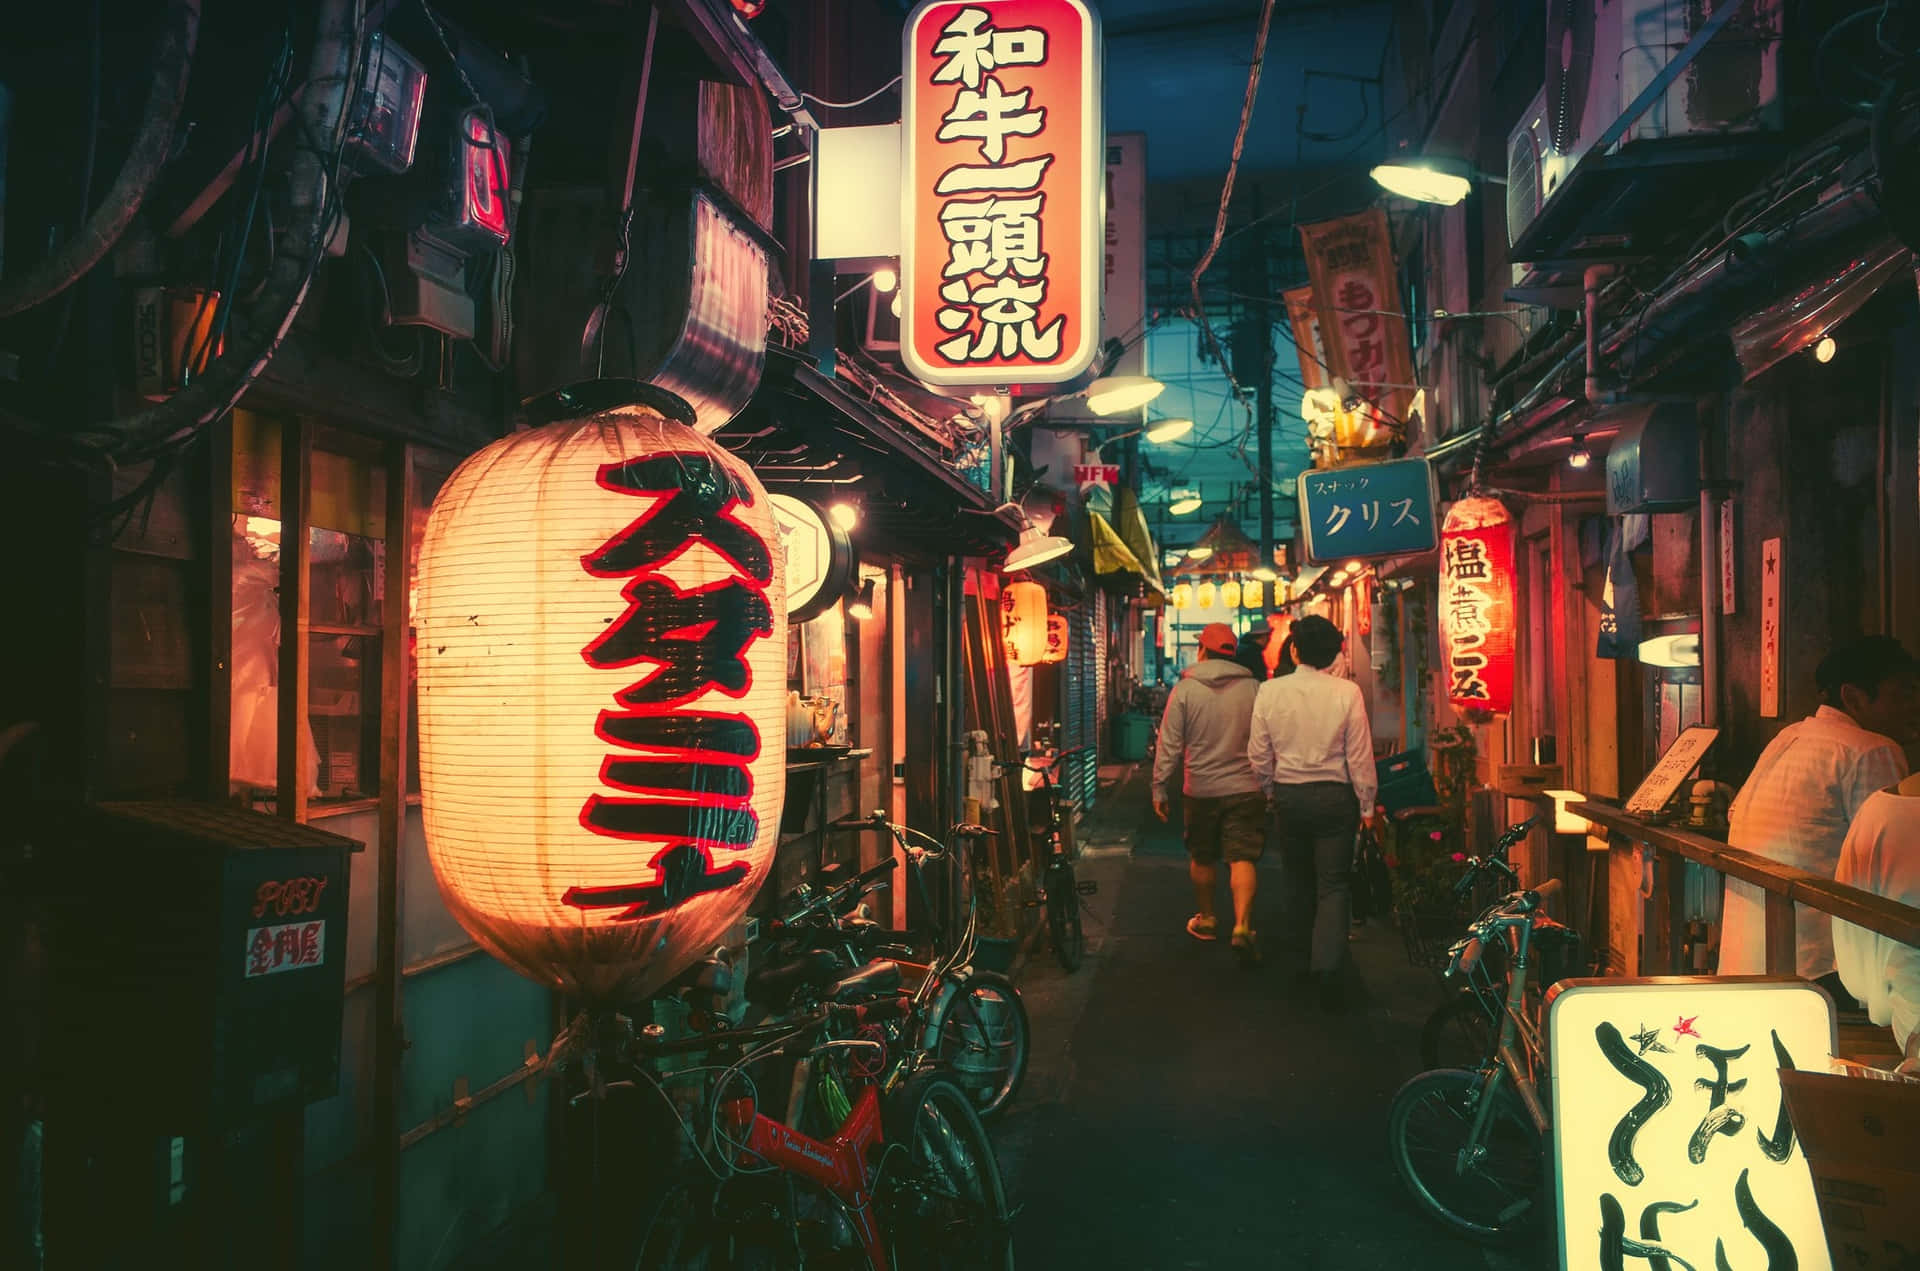 Luzesde Neon Iluminam As Ruas Do Japão. Papel de Parede